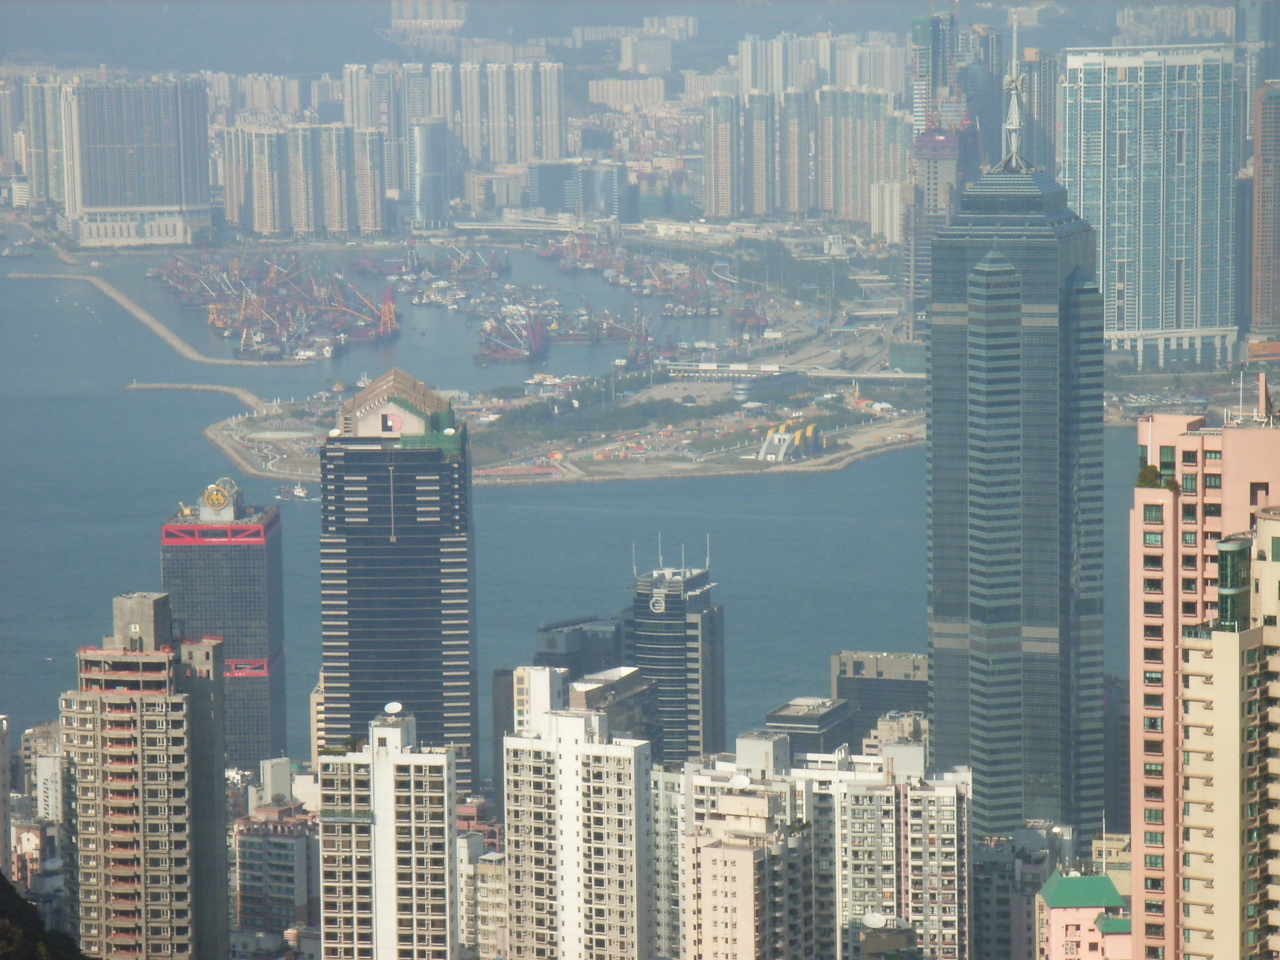 HK_Peak_COSCO_Tower_The_Center_West_Kln.jpg